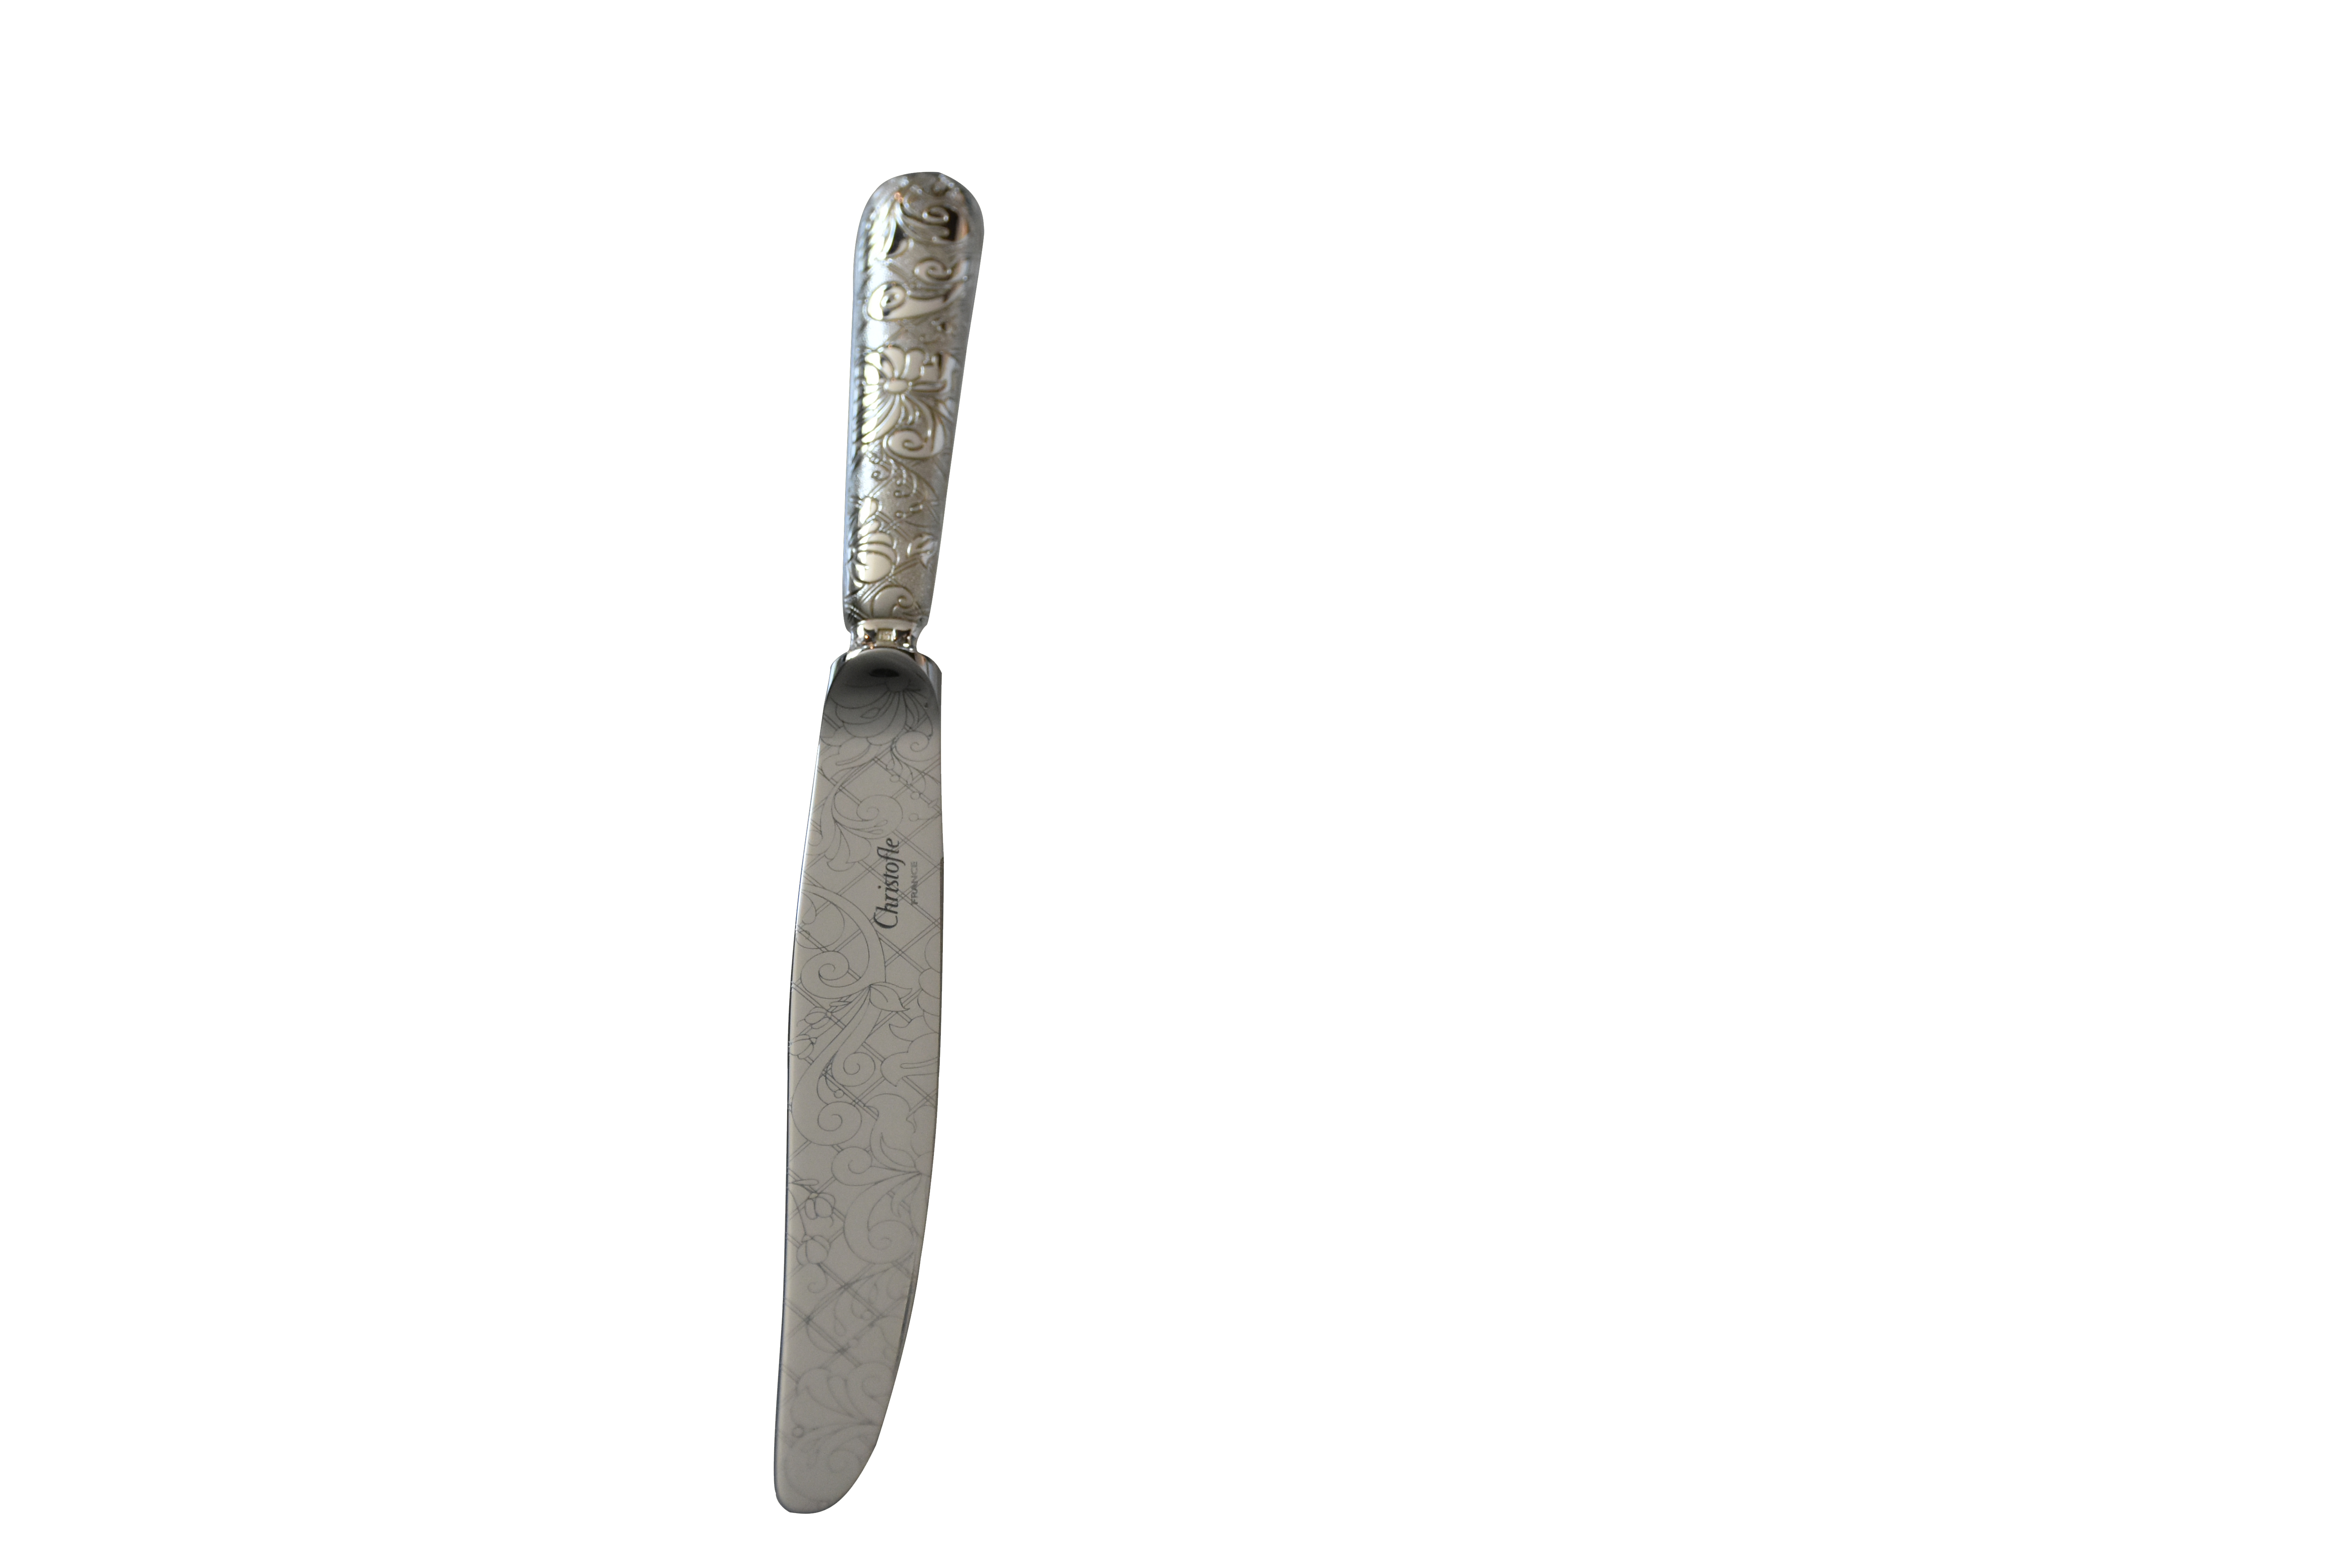 Christofle Jardin d'Eden standard knife